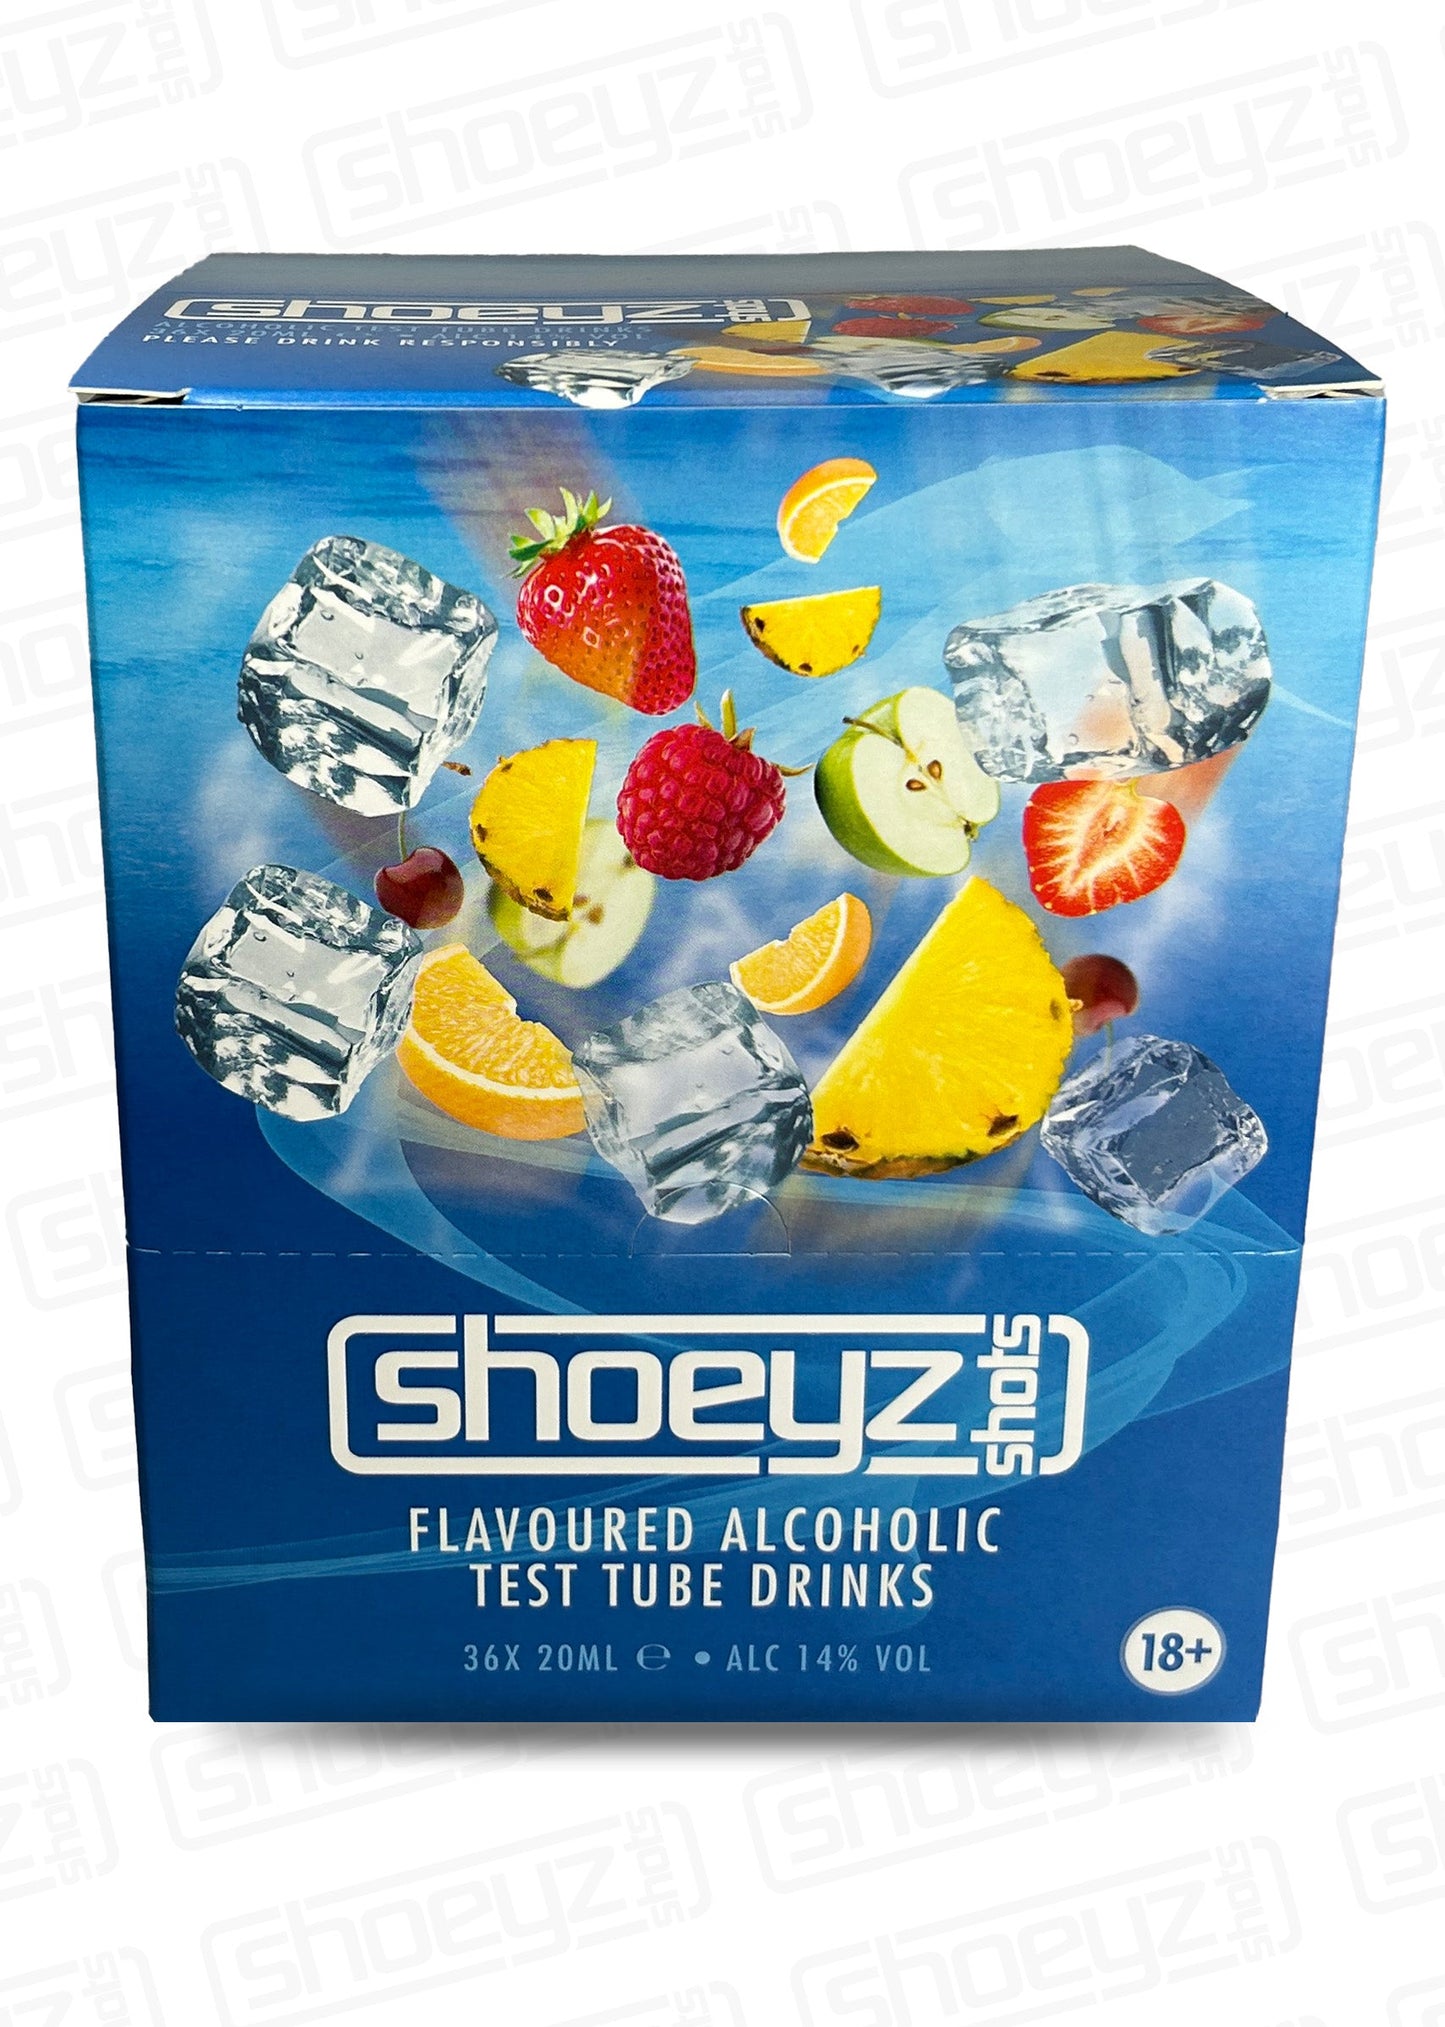 shoeyz vodka test tube shots strawberry rear case